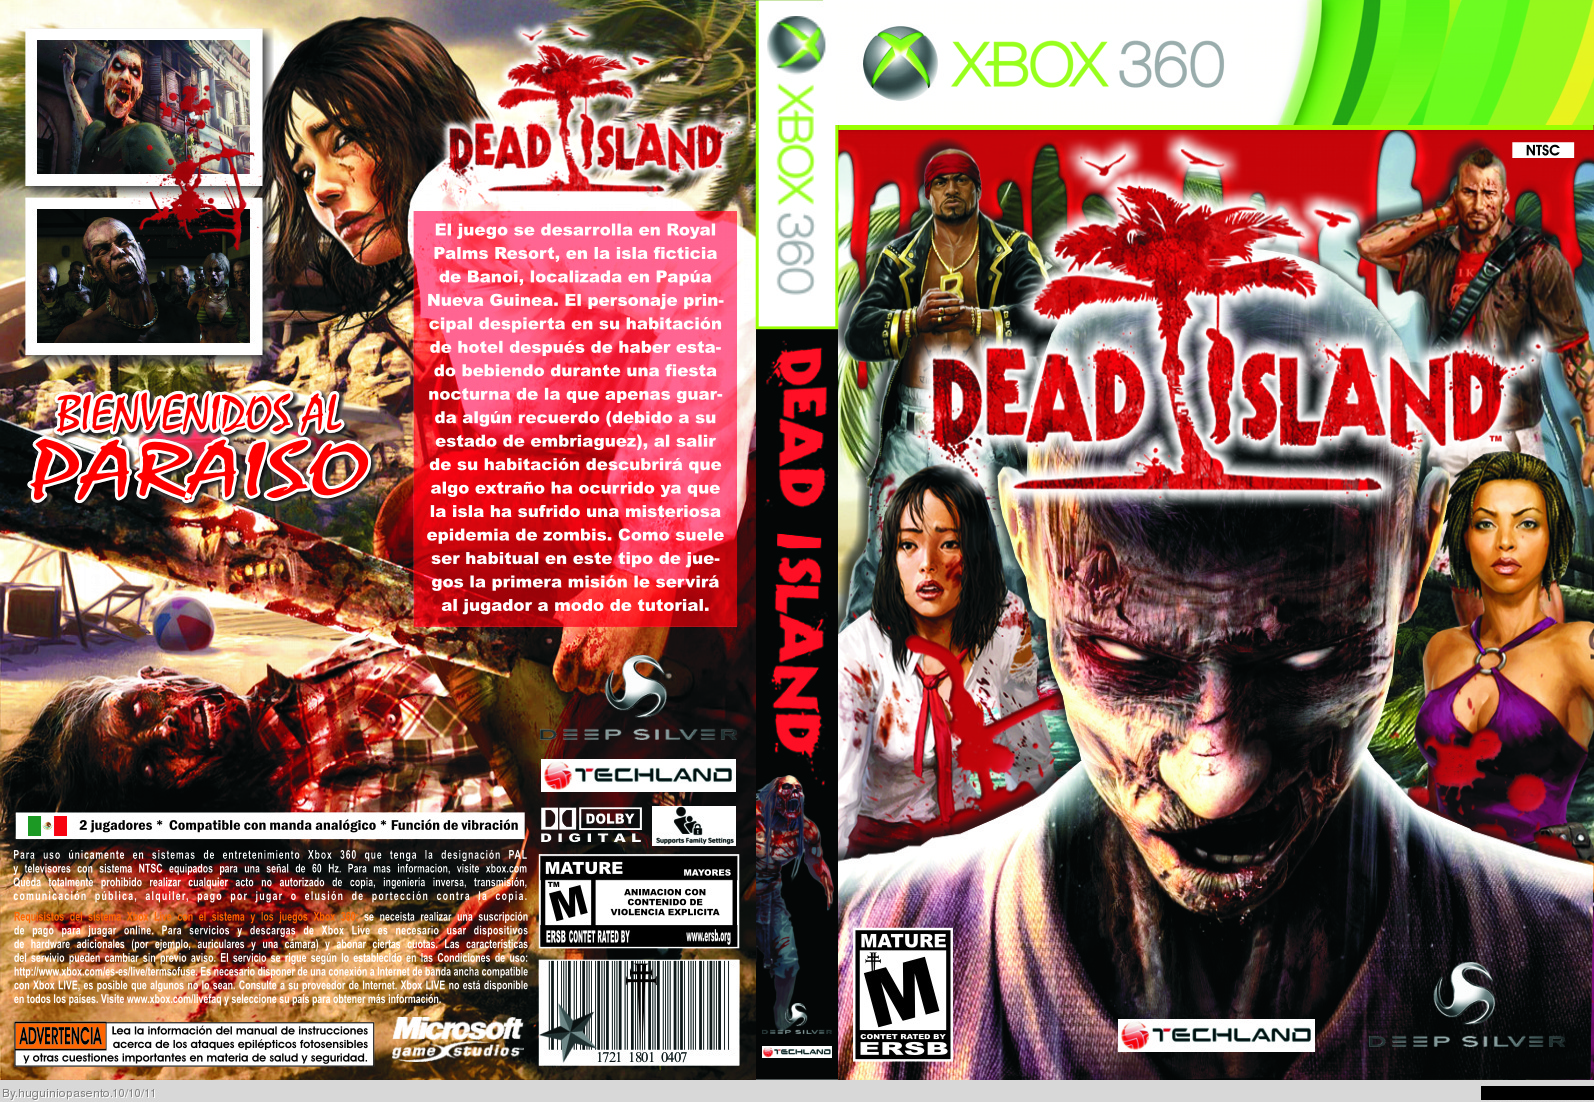 Dead Island box cover